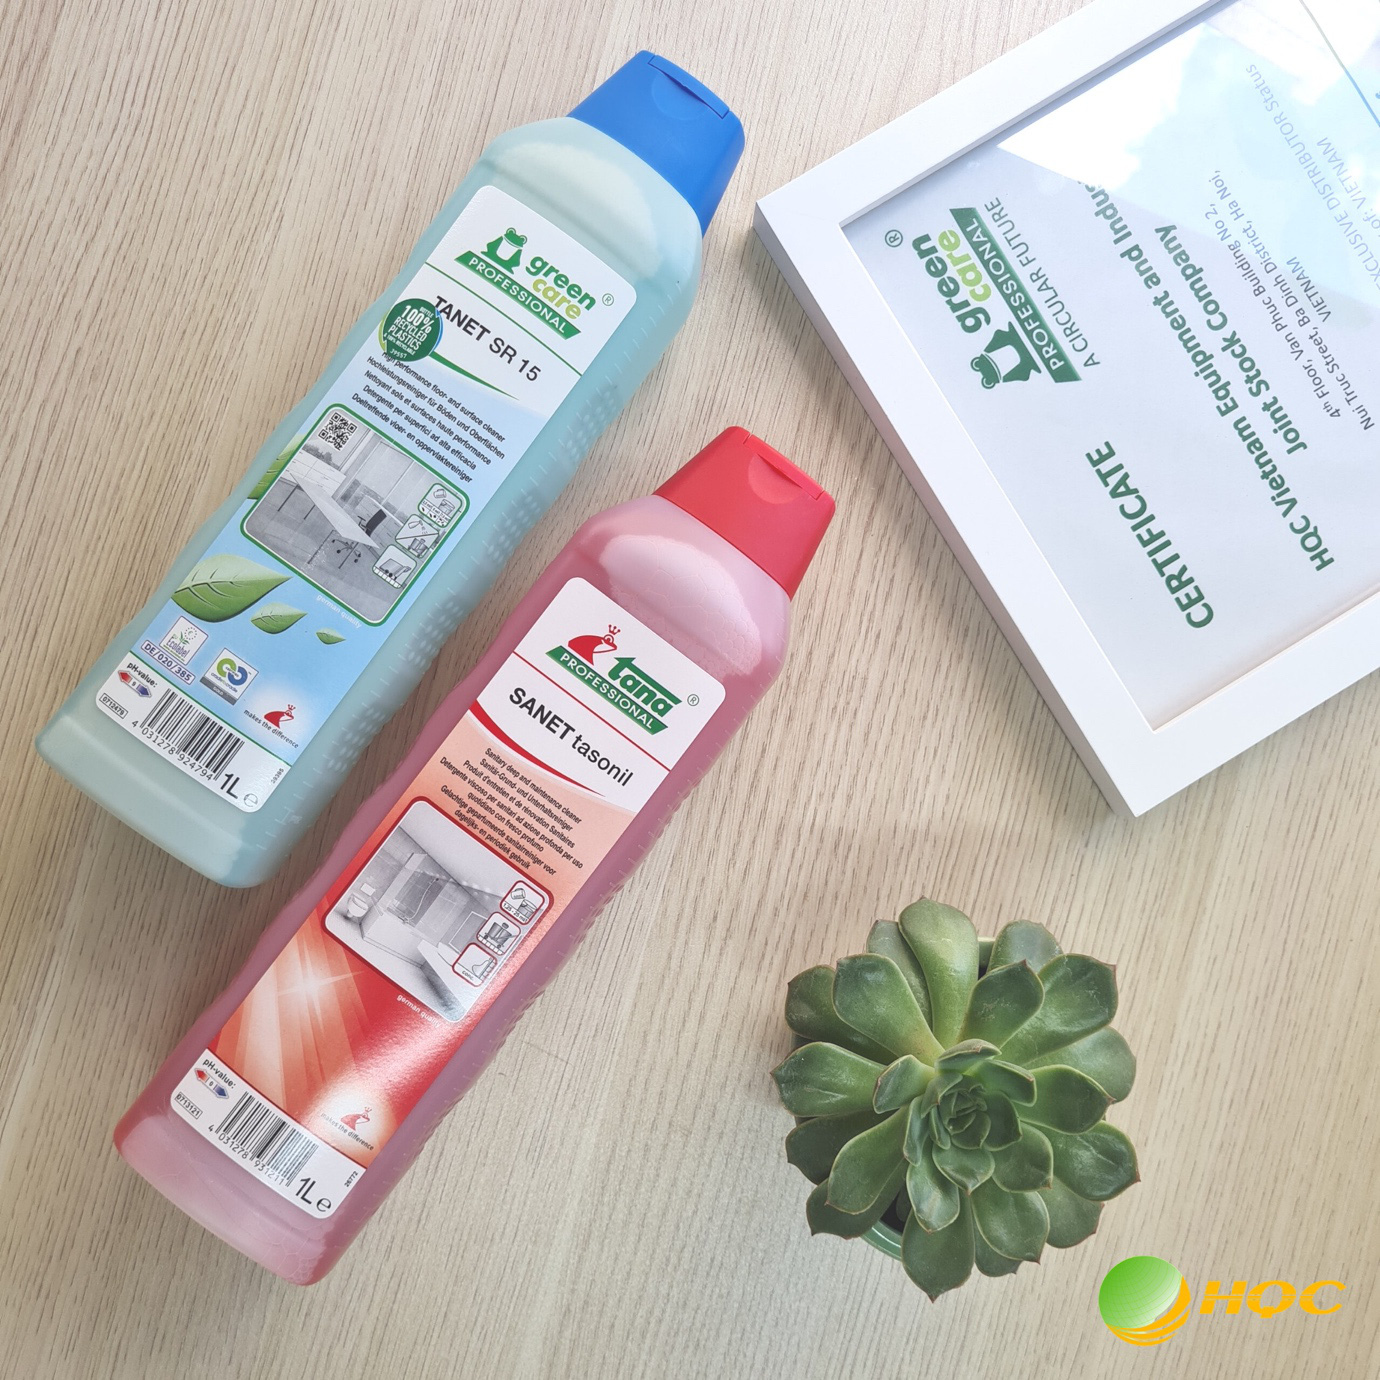 Tana Greencare PROFESSIONAL Việt Nam – thương hiệu chất tẩy rửa kể câu chuyện bảo vệ môi trường qua từng sản phẩm - Ảnh 2.